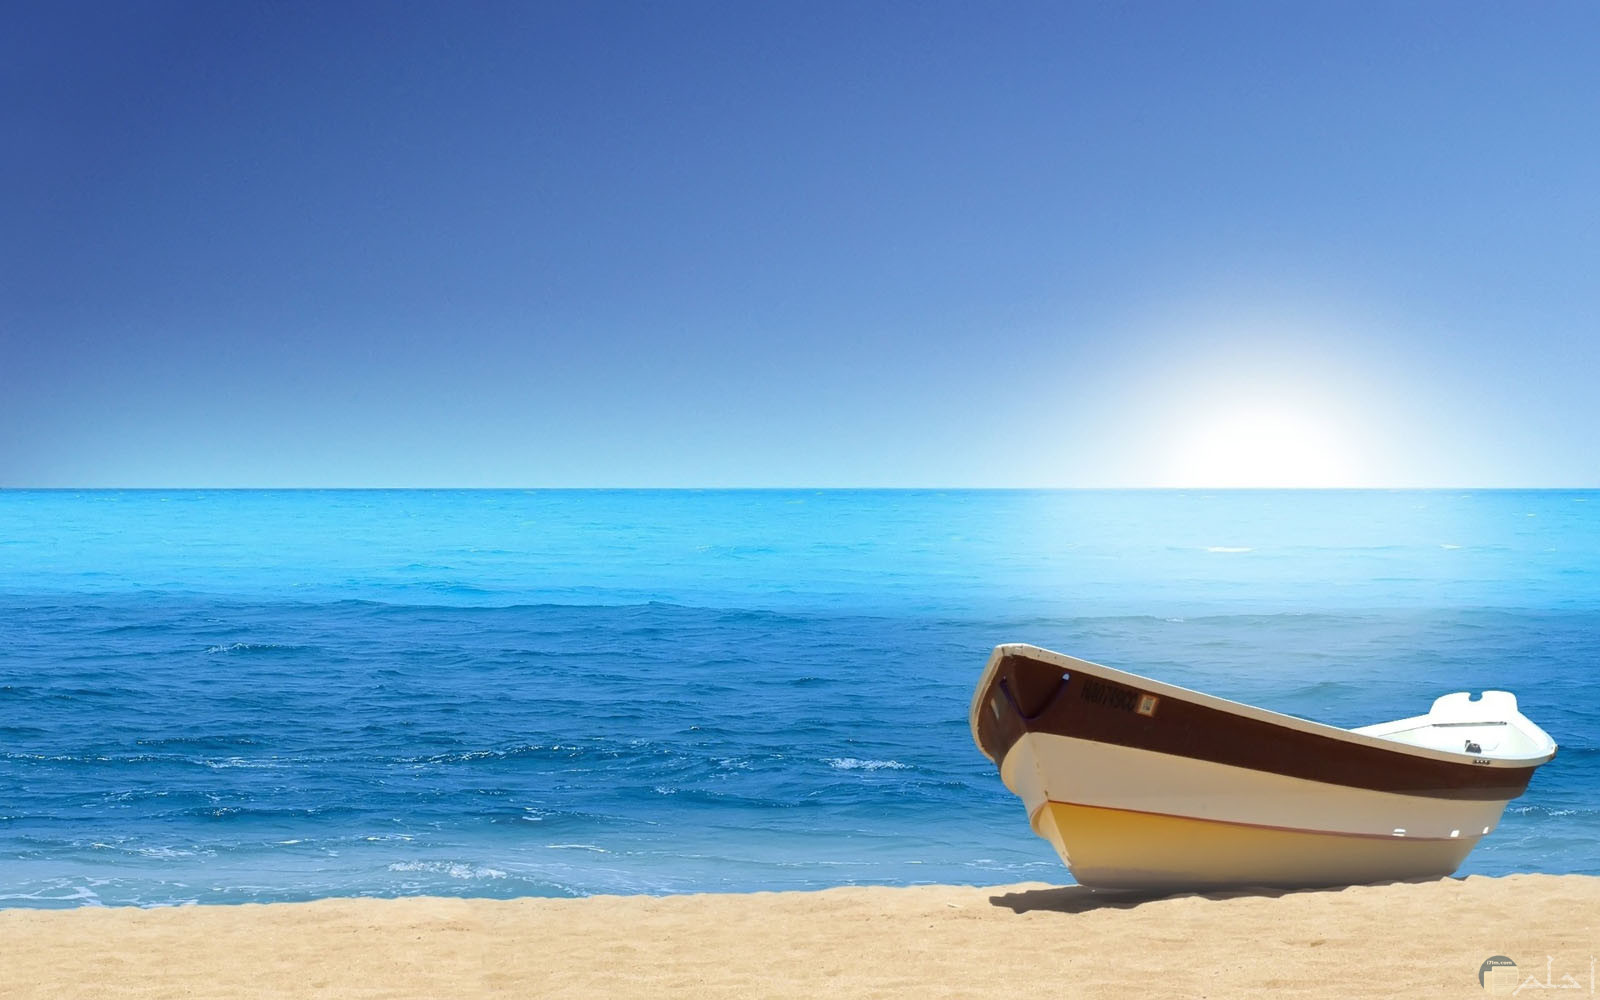 قارب صغير على رمال شاطئ بحر جميل.